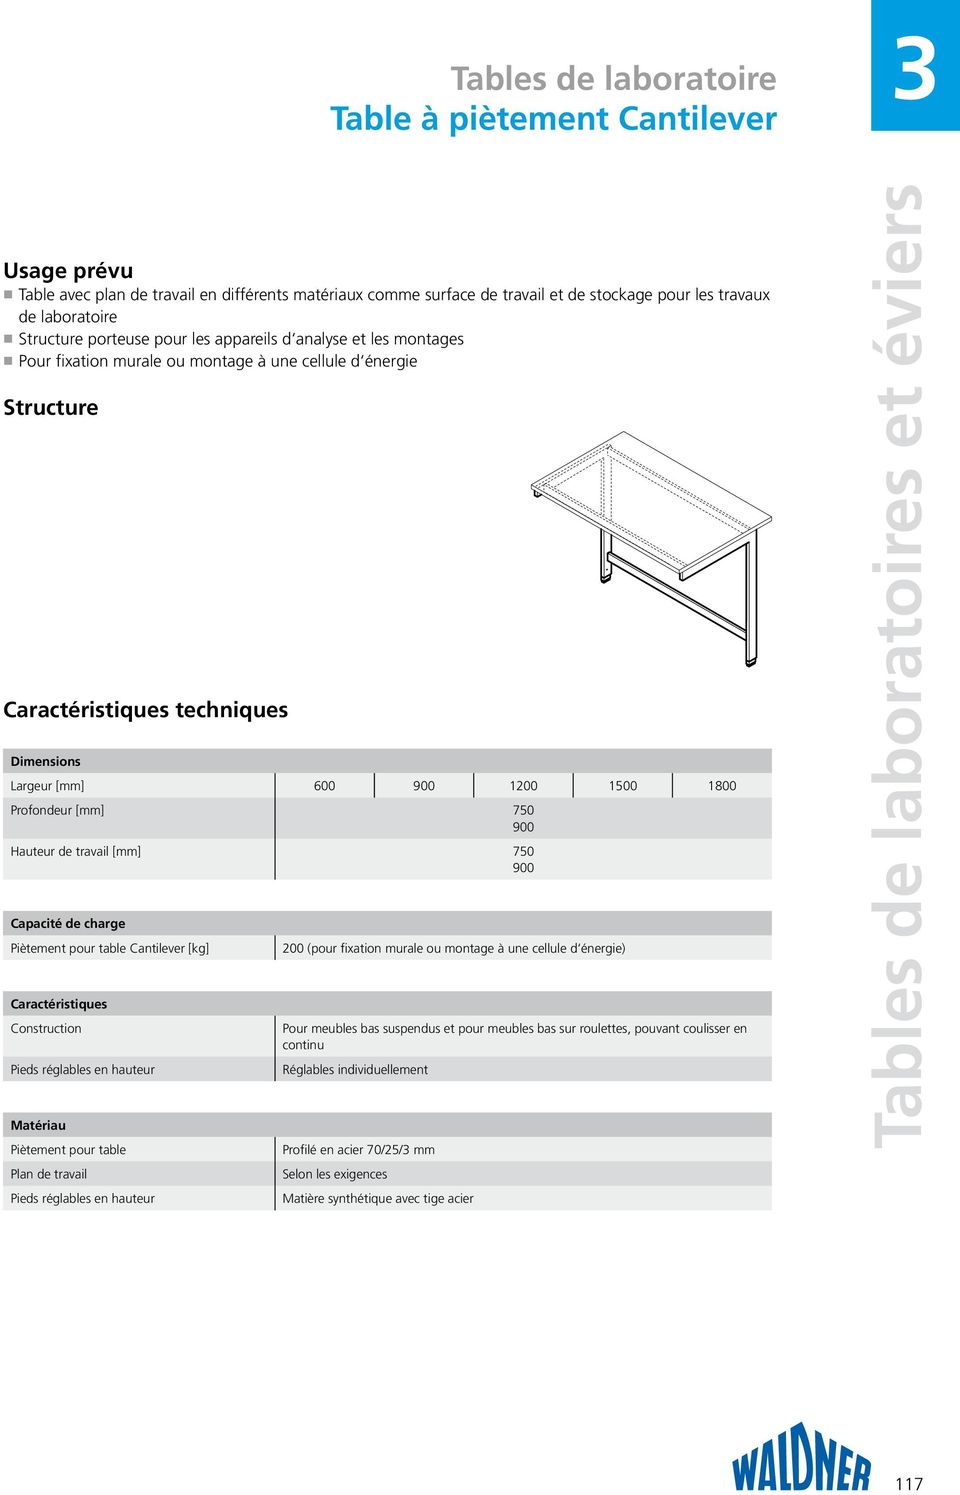 charge Piètement pour table Cantilever [kg] Caractéristiques Construction Pieds réglables en hauteur Piètement pour table Plan de travail Pieds réglables en hauteur 200 (pour fixation murale ou